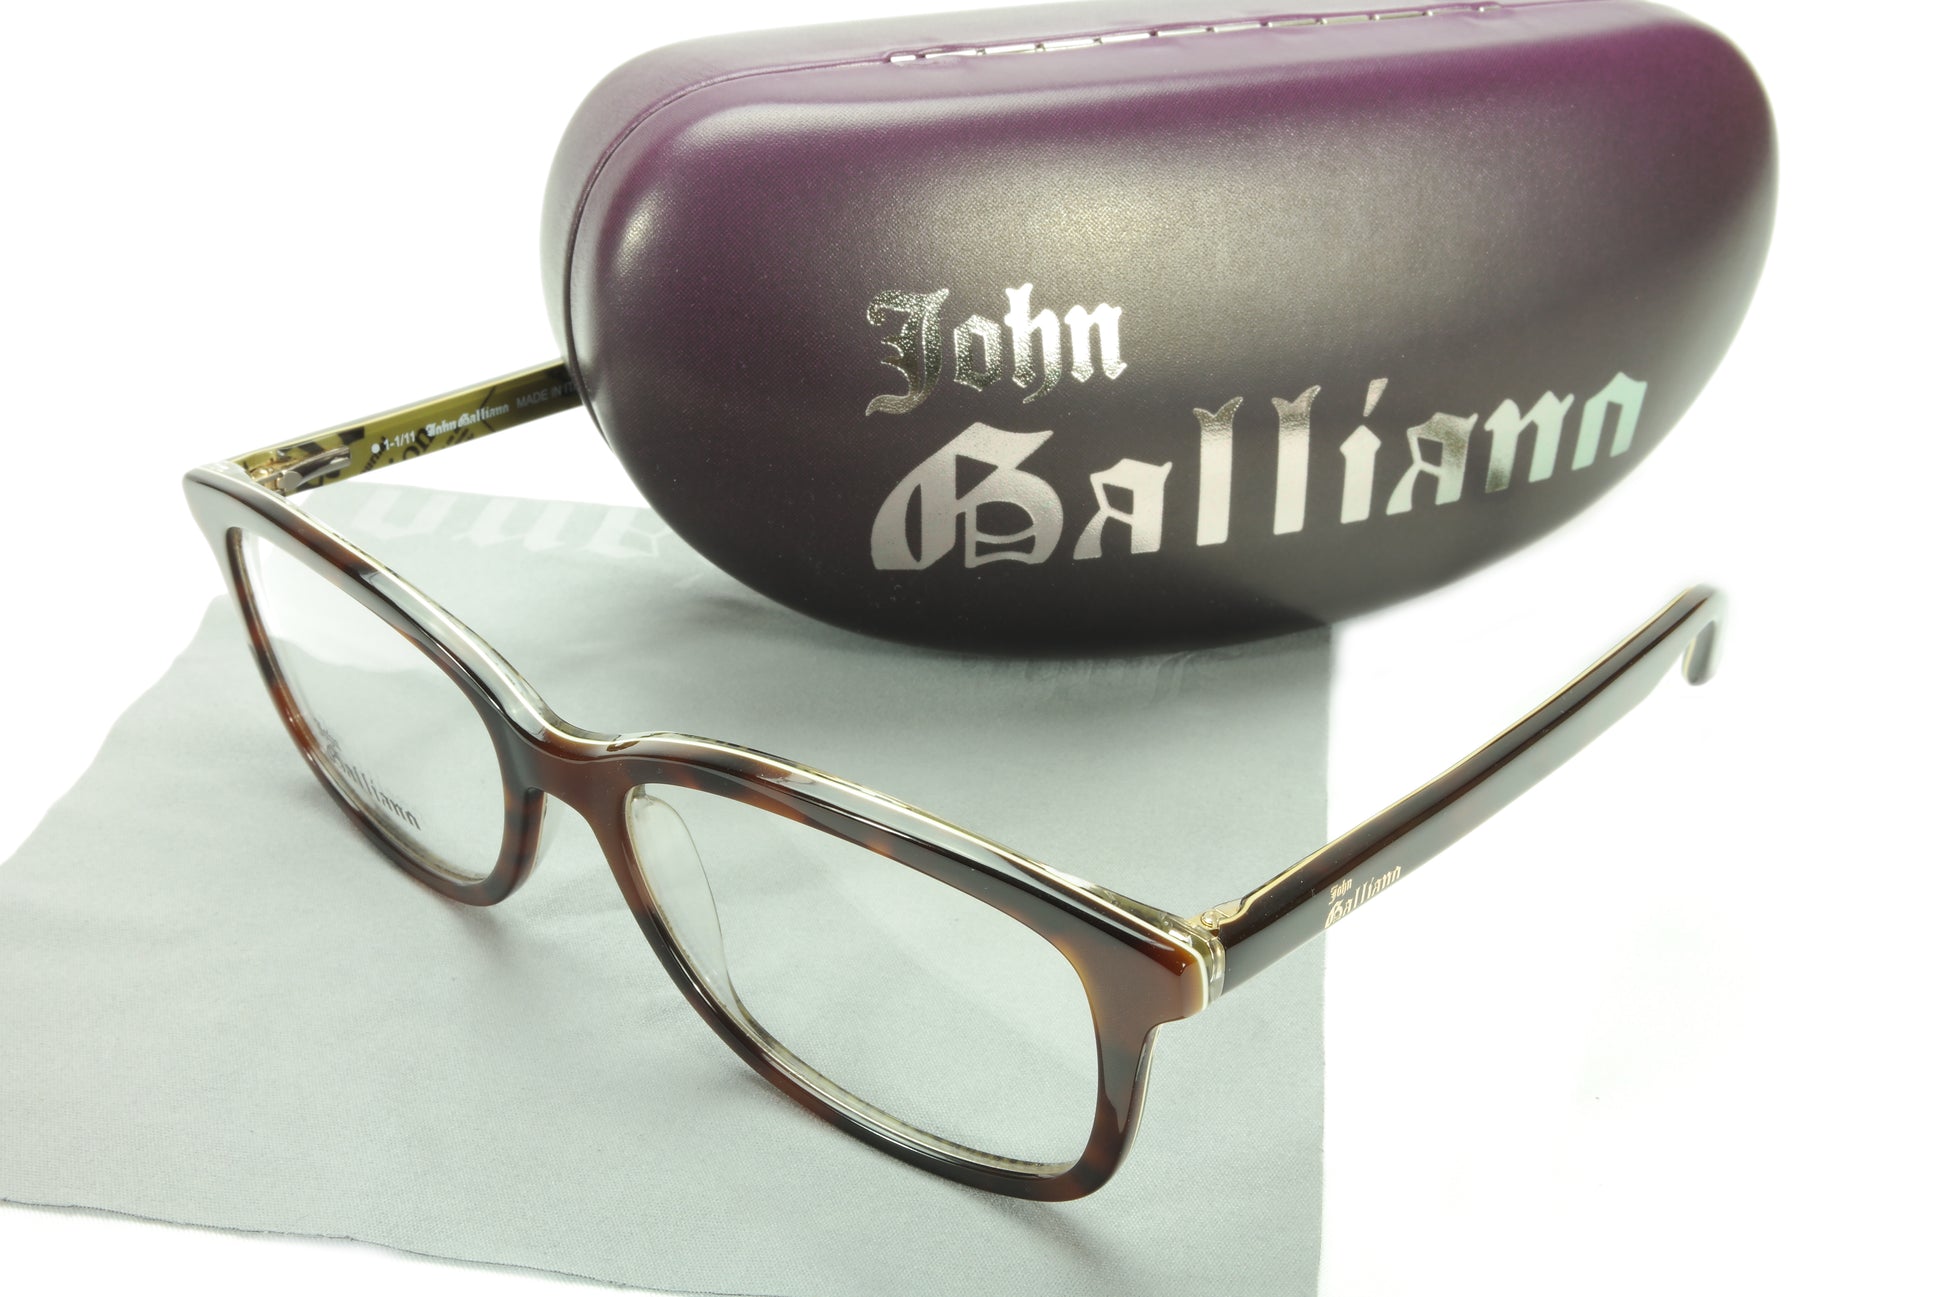 John Galliano Eyeglasses Frame JG5011 056 Havana Brown Over Green News - Frame Bay